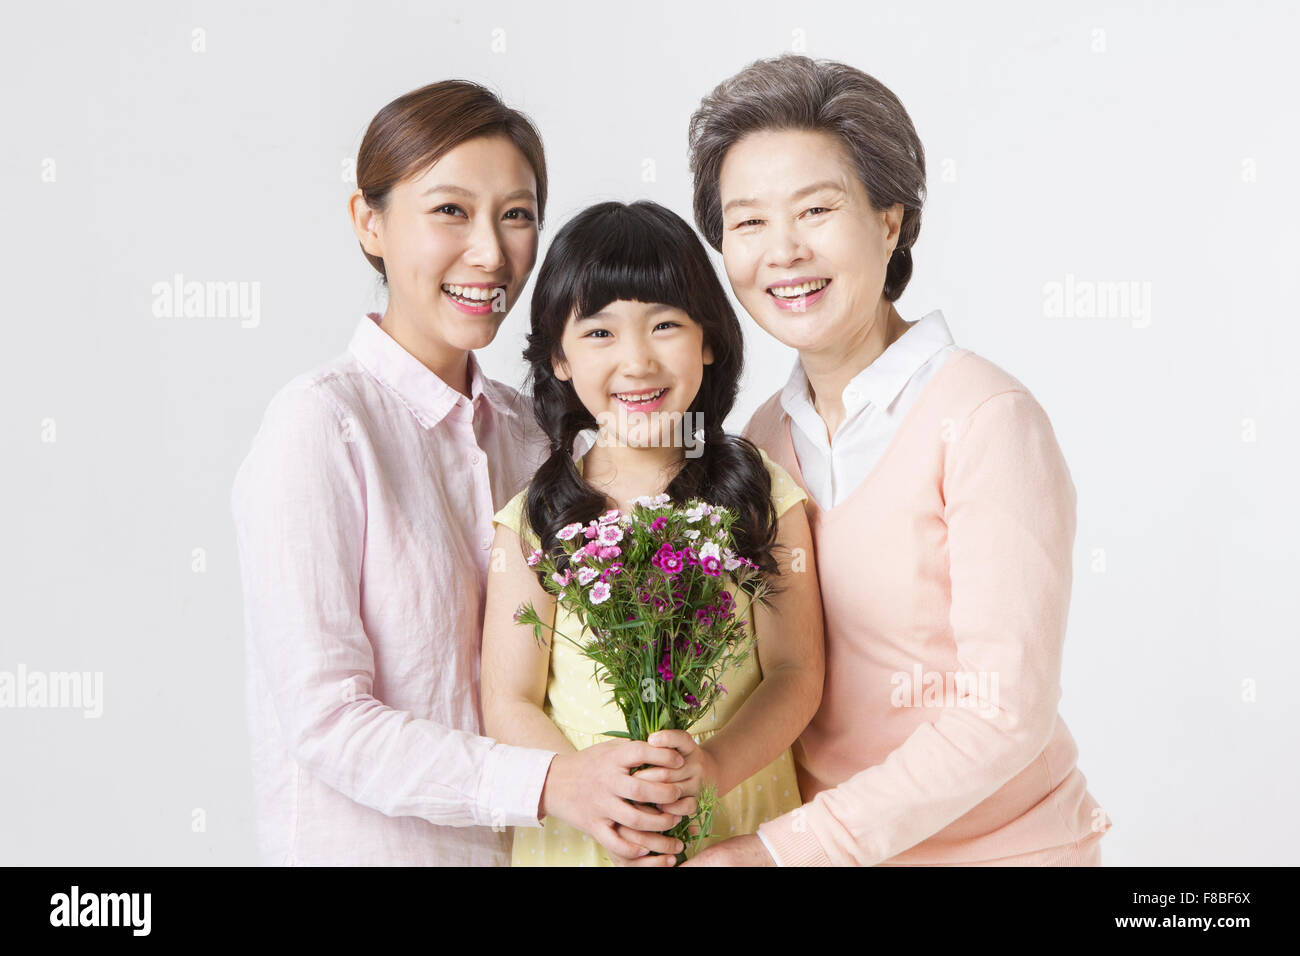 Flores celebrada por el joven, adulto joven mujer, y mujer senior todos mirando hacia adelante con una sonrisa Foto de stock